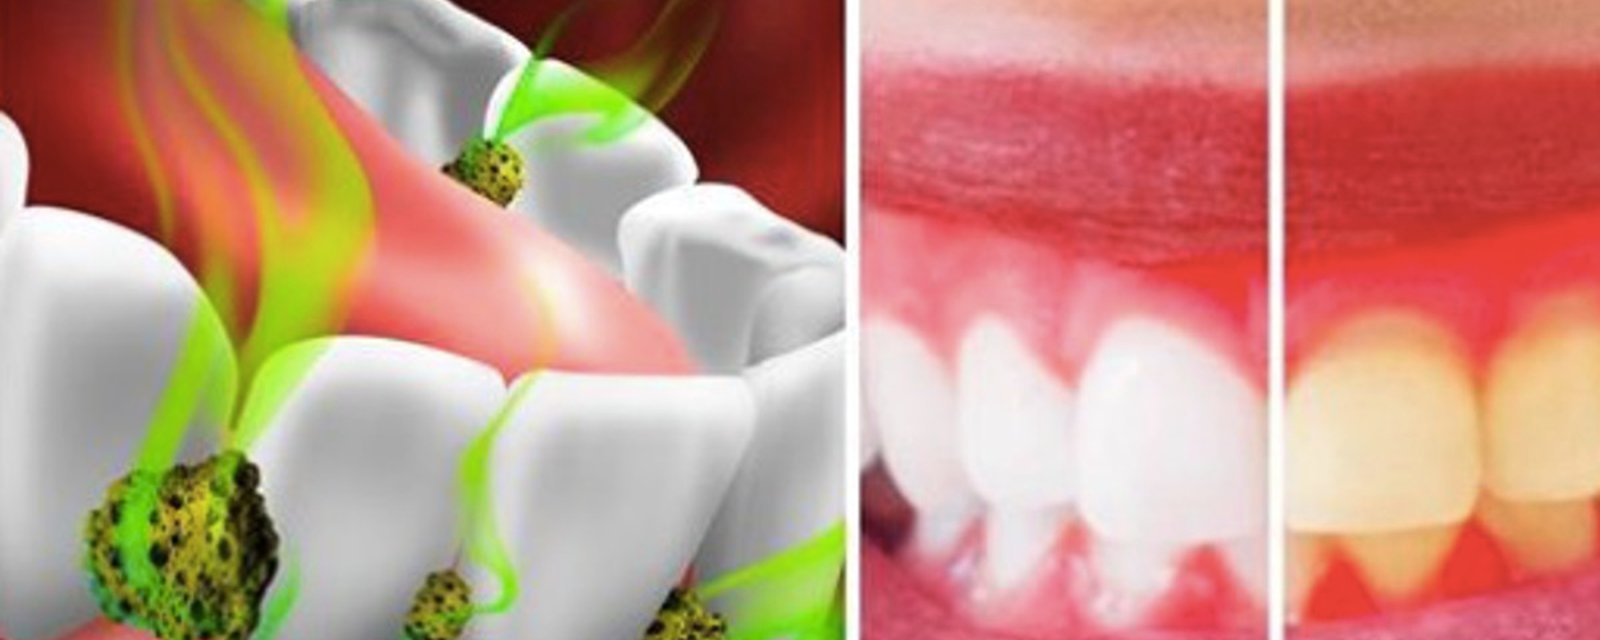 7 façons de tuer les bactéries dans votre bouche et de combattre la mauvaise haleine 